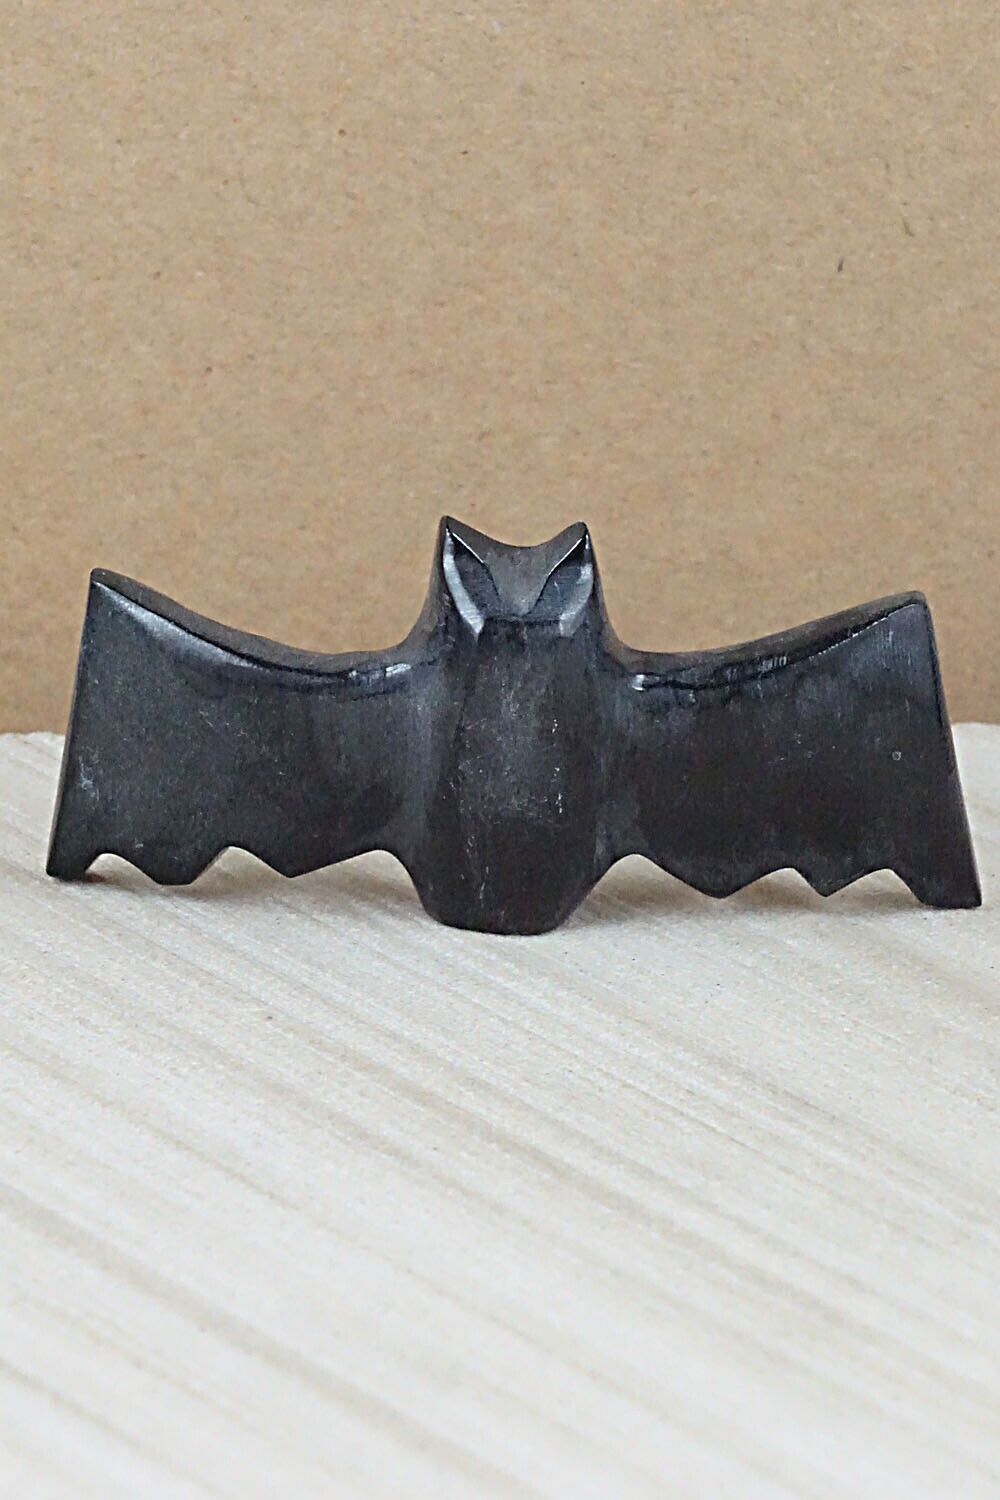 Bat Zuni Fetish Carving - Tim Lementino